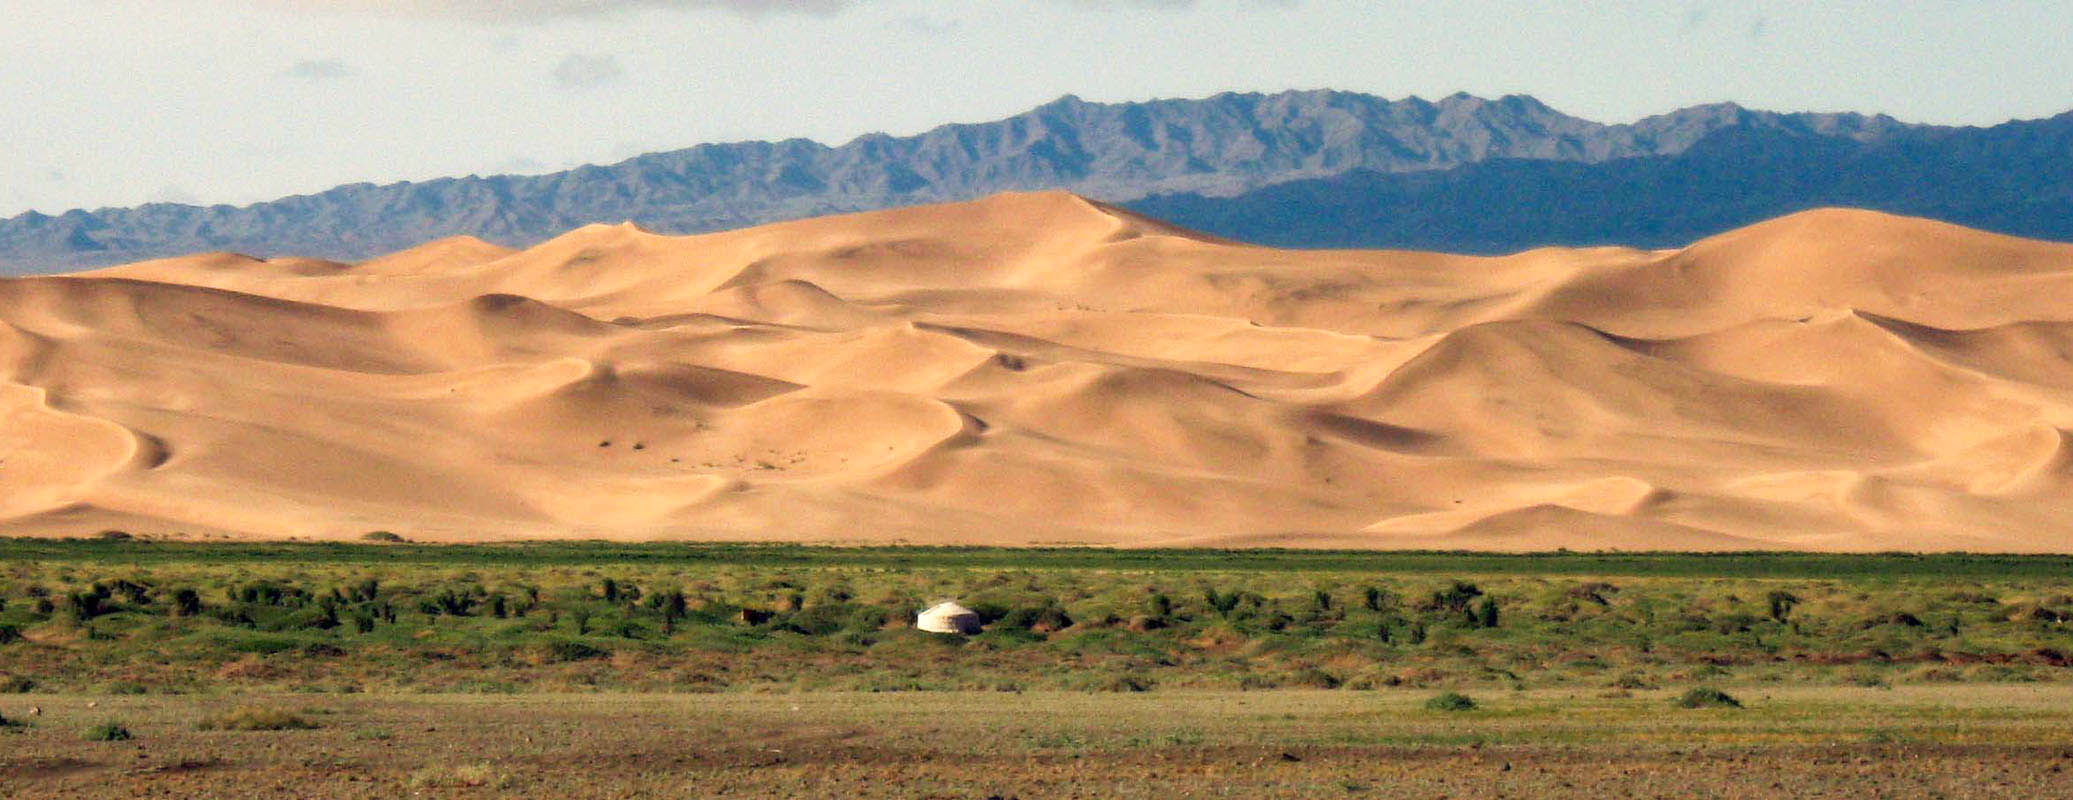 Mongolian Tours